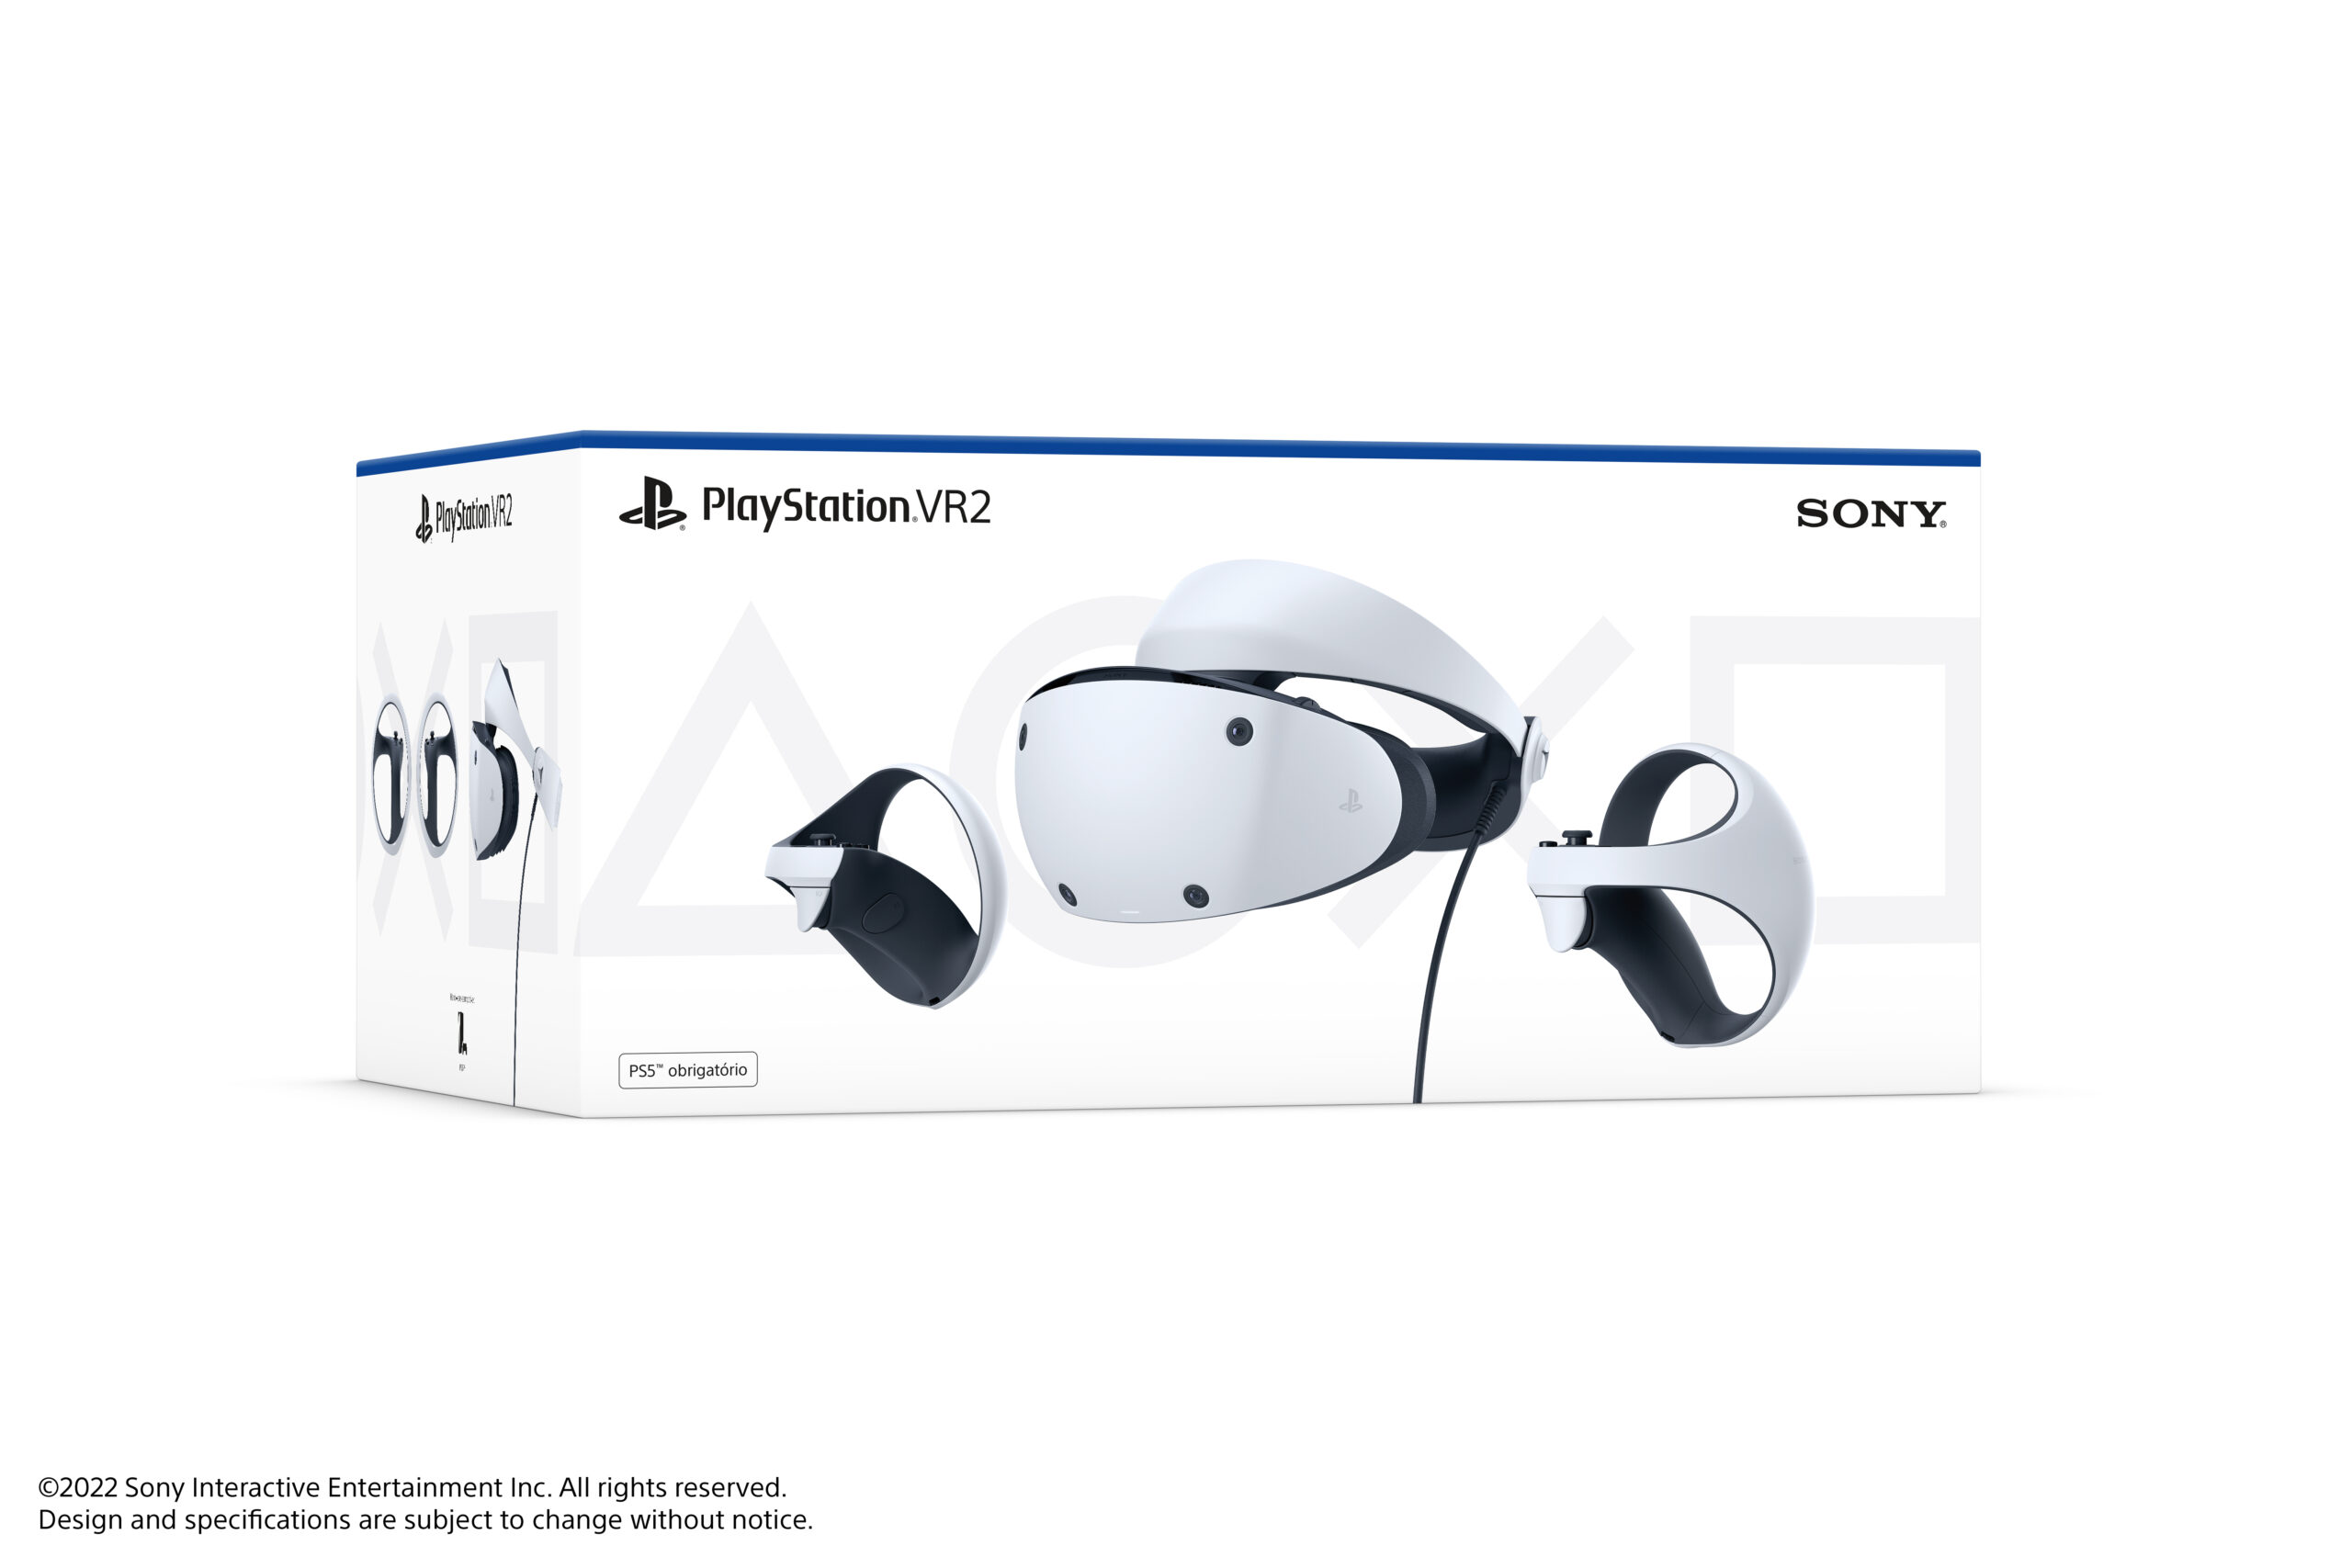 Sony confirma lançamento do PS VR2 para fevereiro de 2023; Confira todos os detalhes! 2022 Viciados